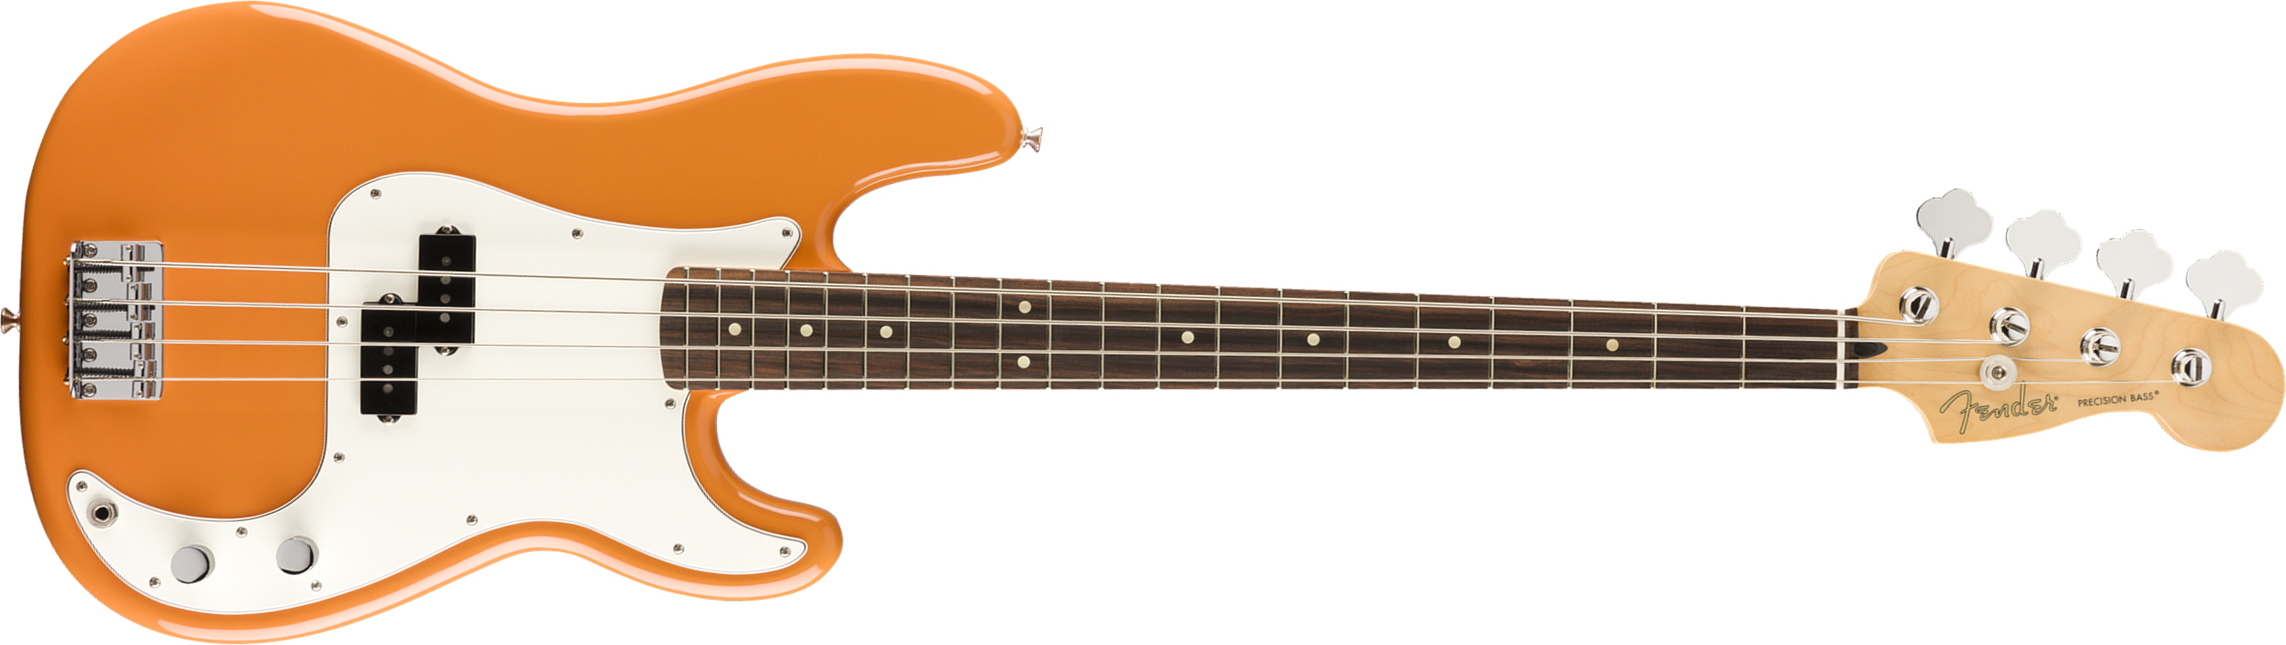 Fender Precision Bass Player Mex Pf - Capri Orange - Solidbody E-bass - Main picture